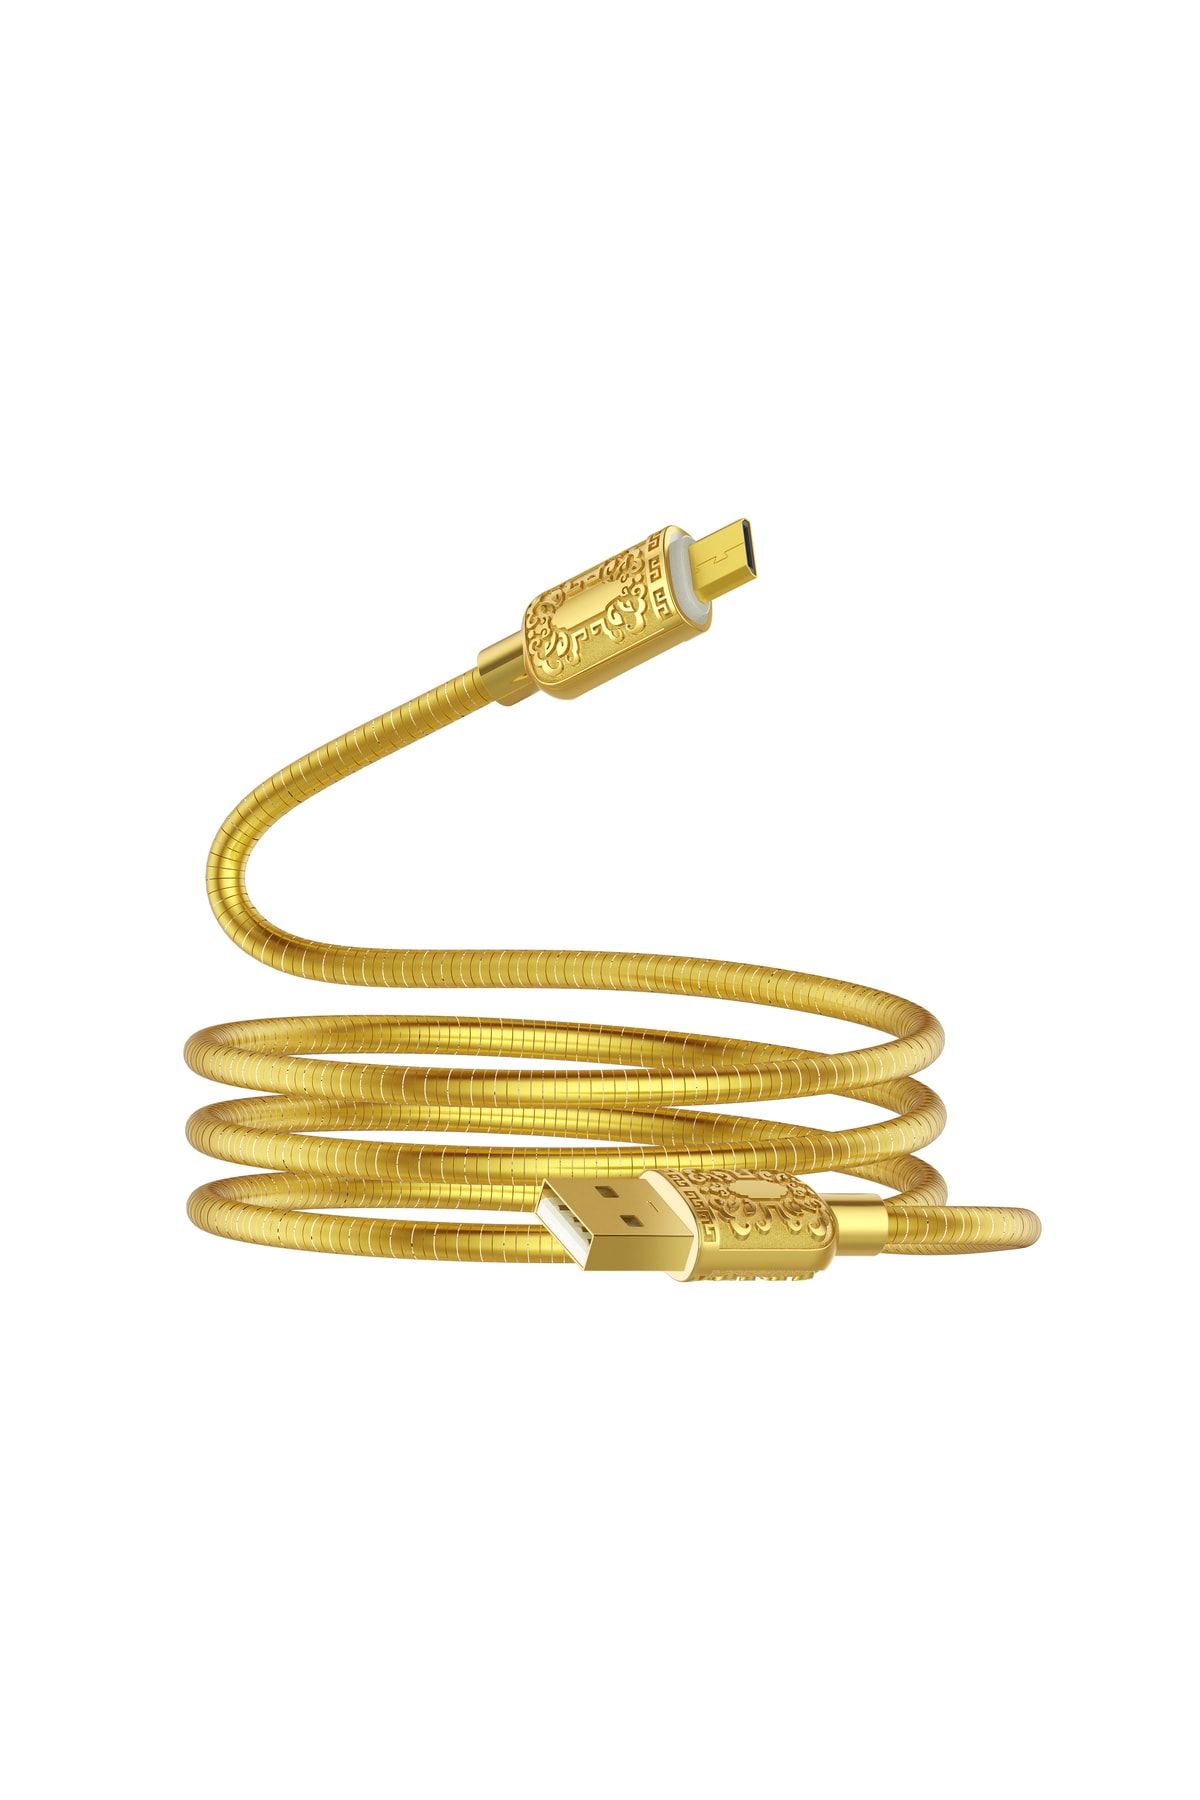 ACL Ack-90 Metal Sarım Golden 3amper Hızlı Şarj & Data Kablosu